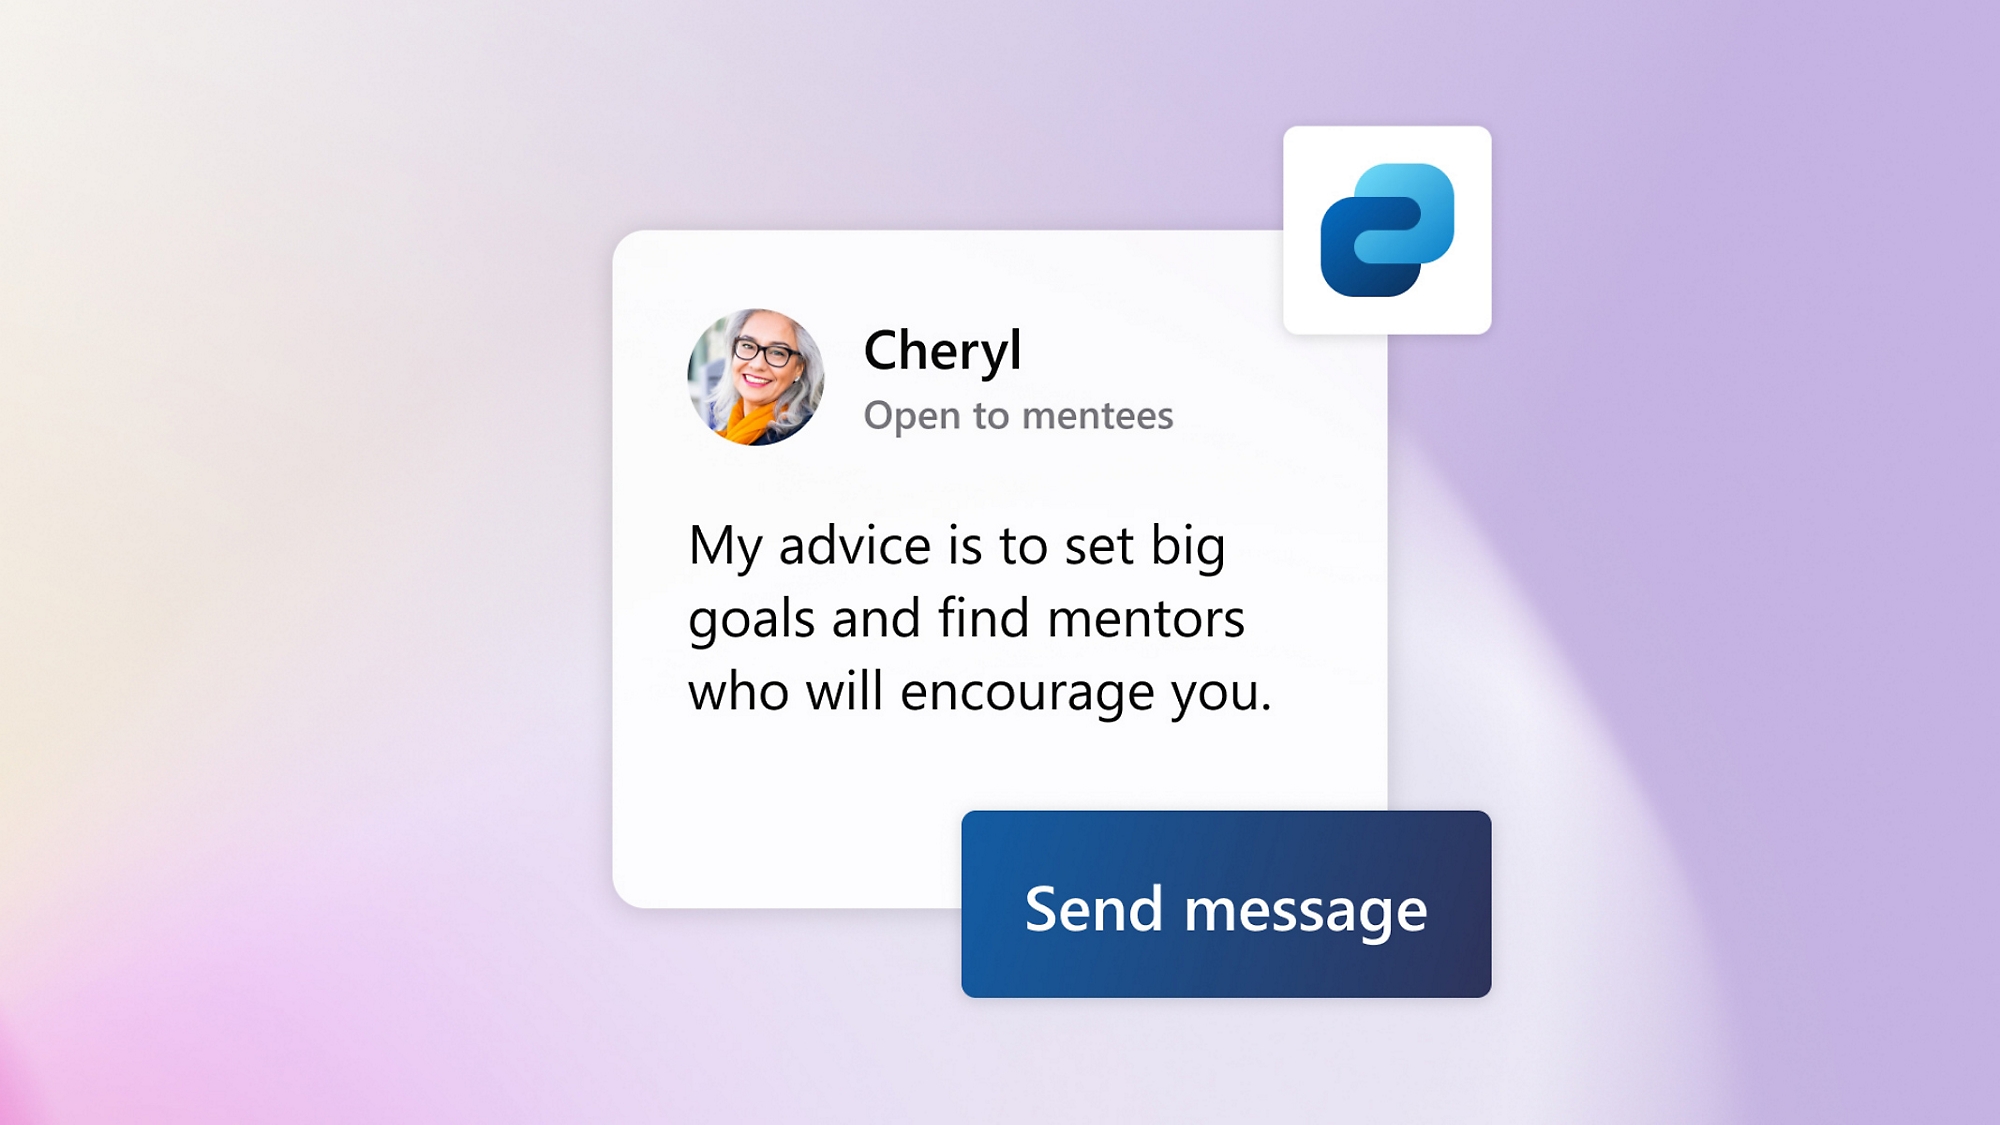 Un tutor ofrece consejos por mensaje de texto en Viva Connections.